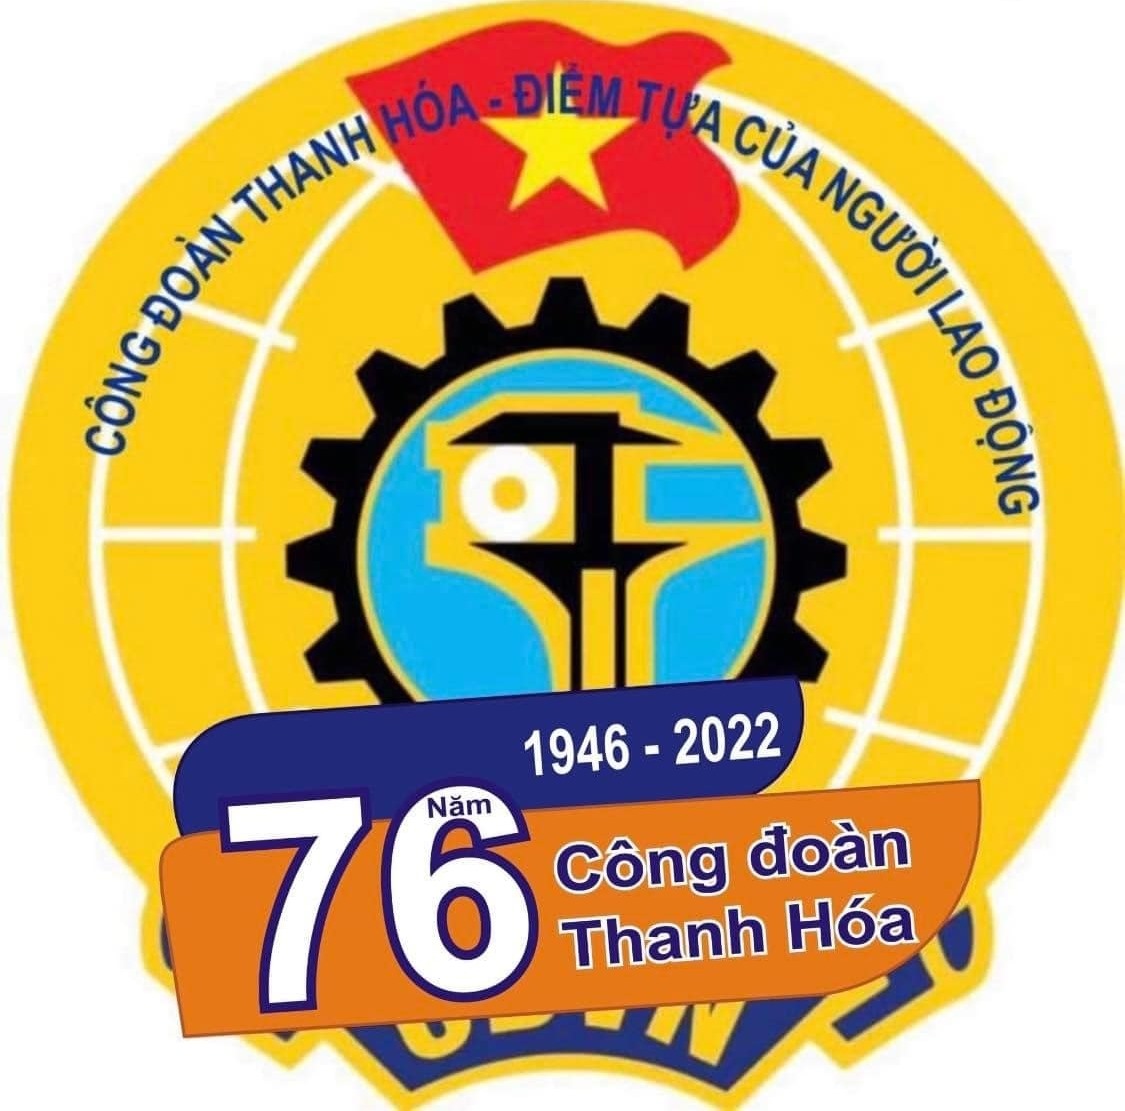 Tổ chức hội thao nhân kỷ niệm 76 năm thành lập Công đoàn Thanh Hóa ...